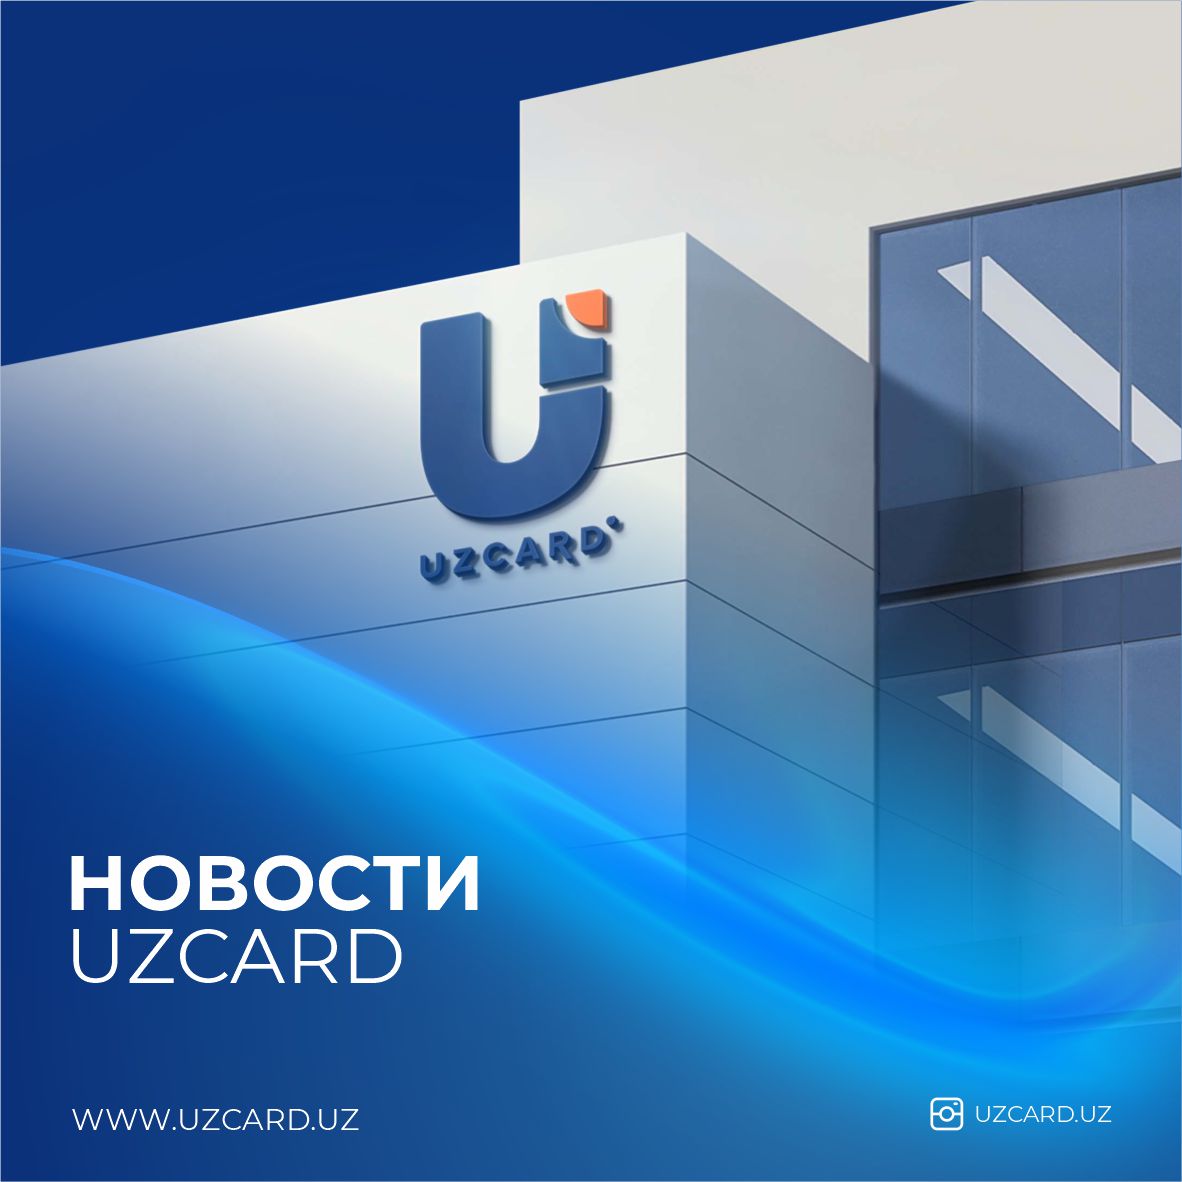 Сменилась организационно-правовая форма UZCARD